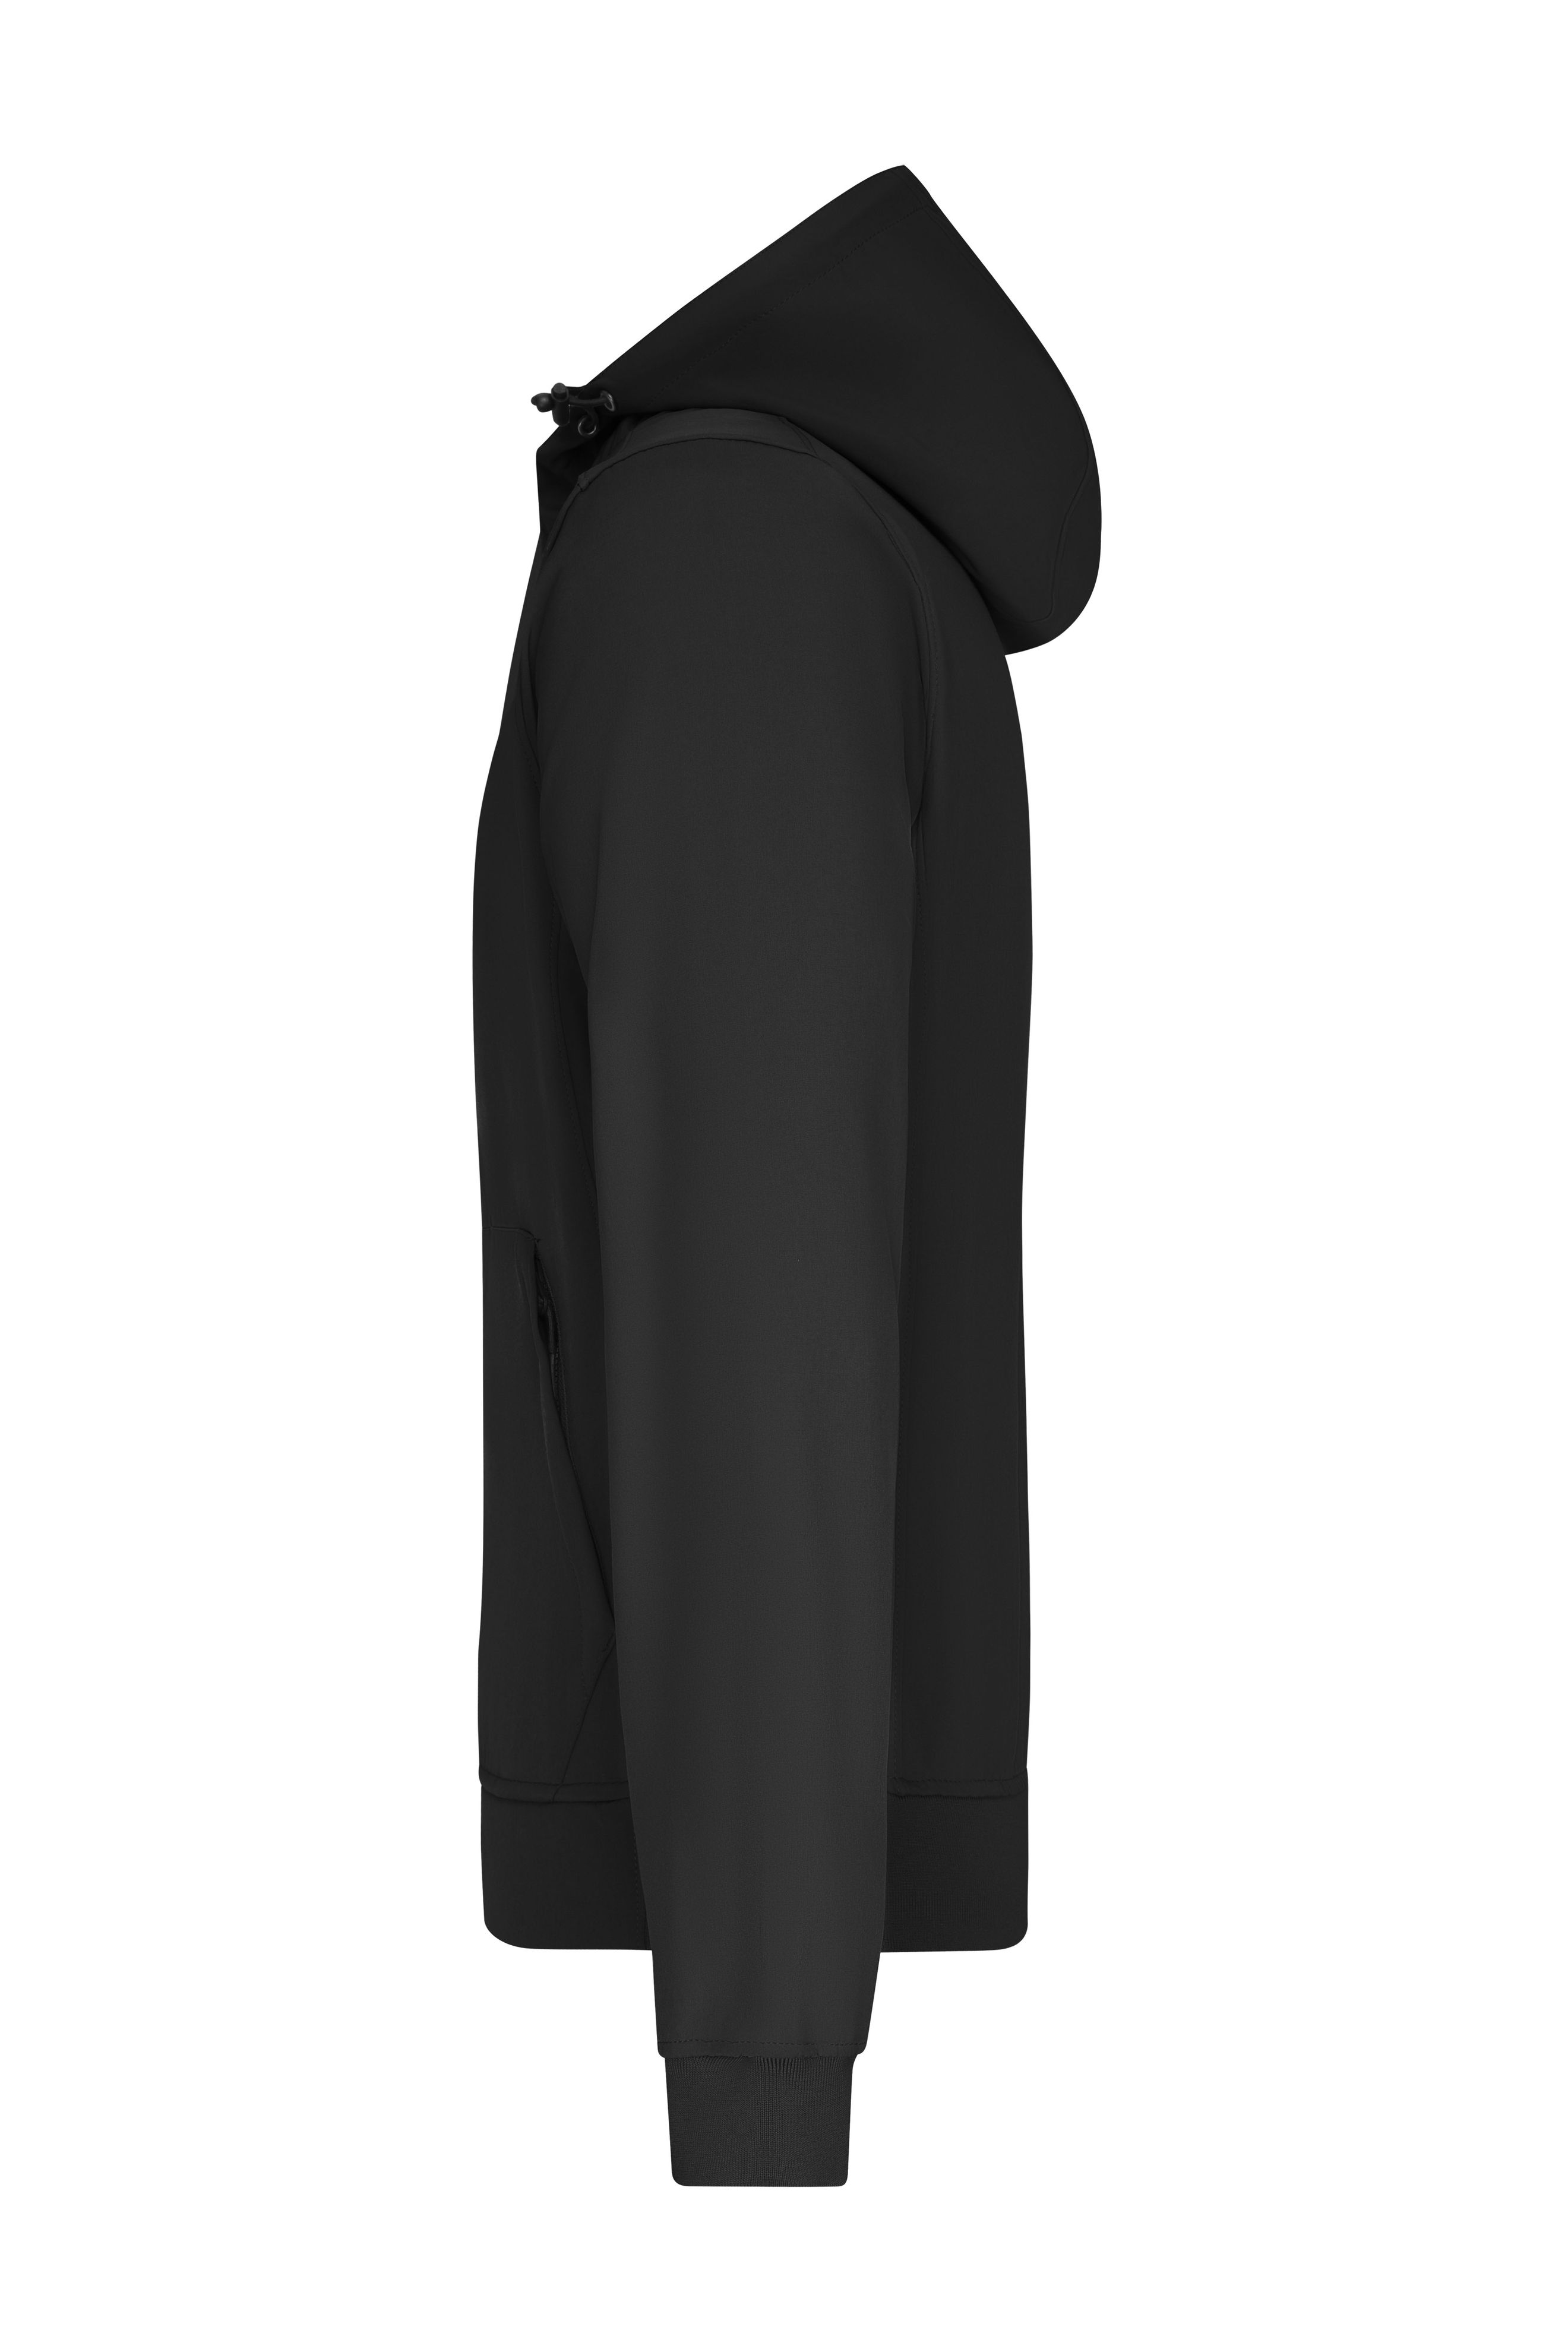 Men Men's Hooded Softshell Jacket Black/black-Promotextilien.de